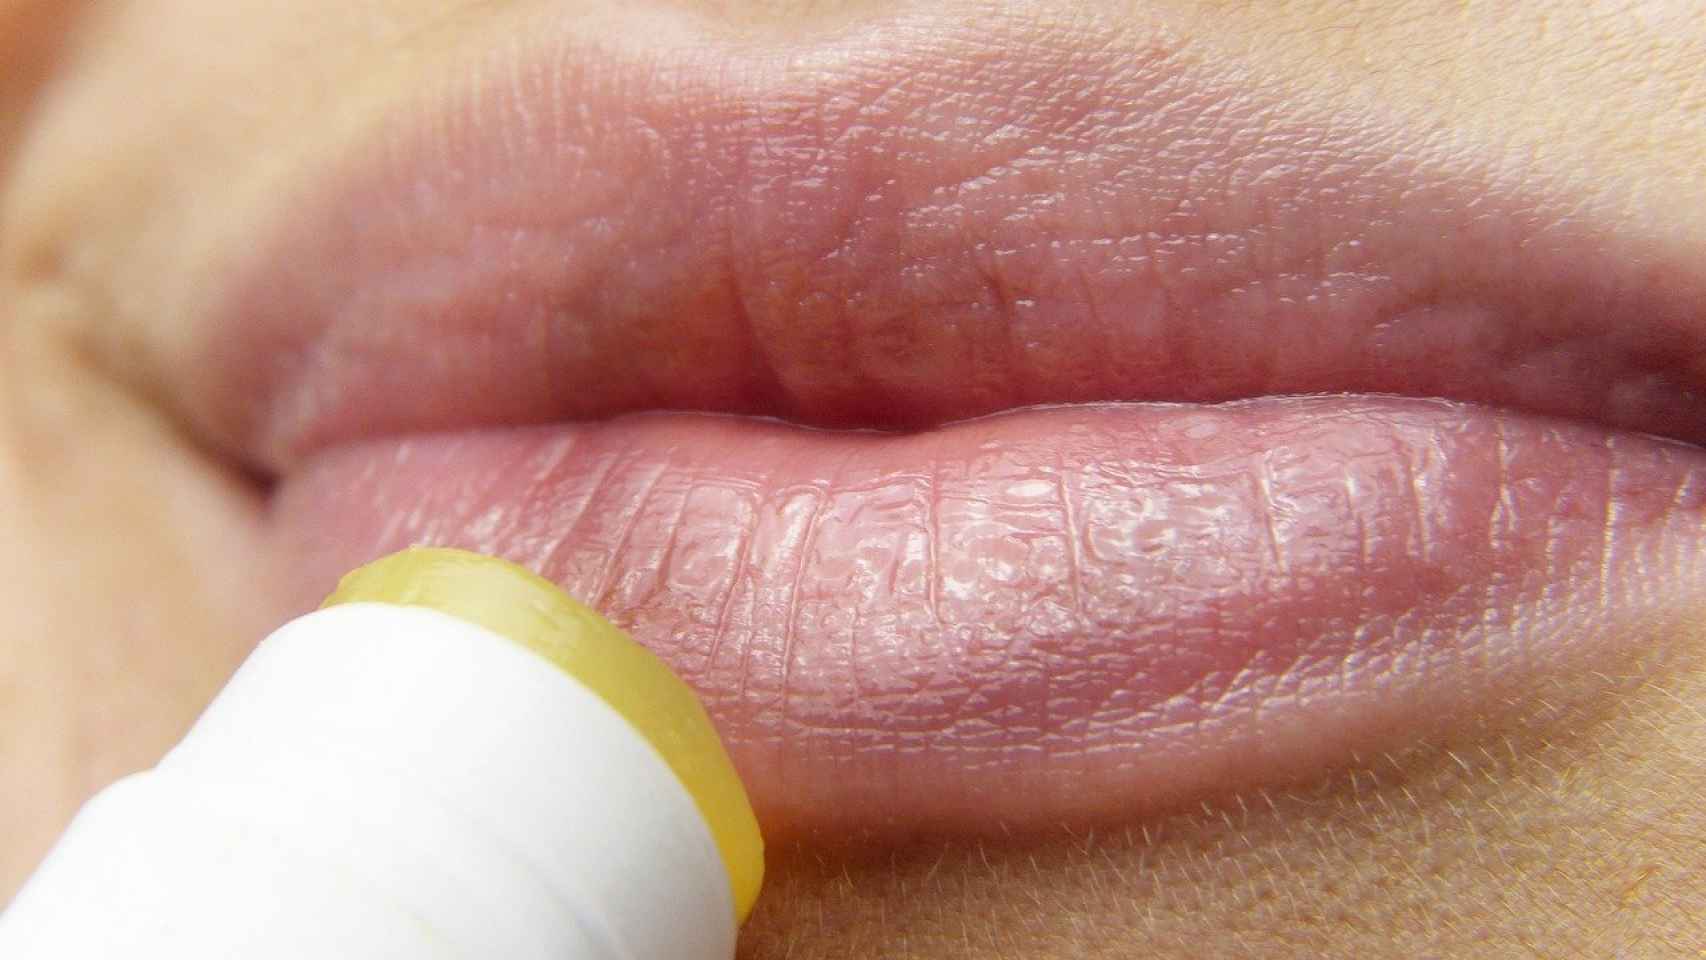 Todo lo que tienes que saber sobre el herpes labial